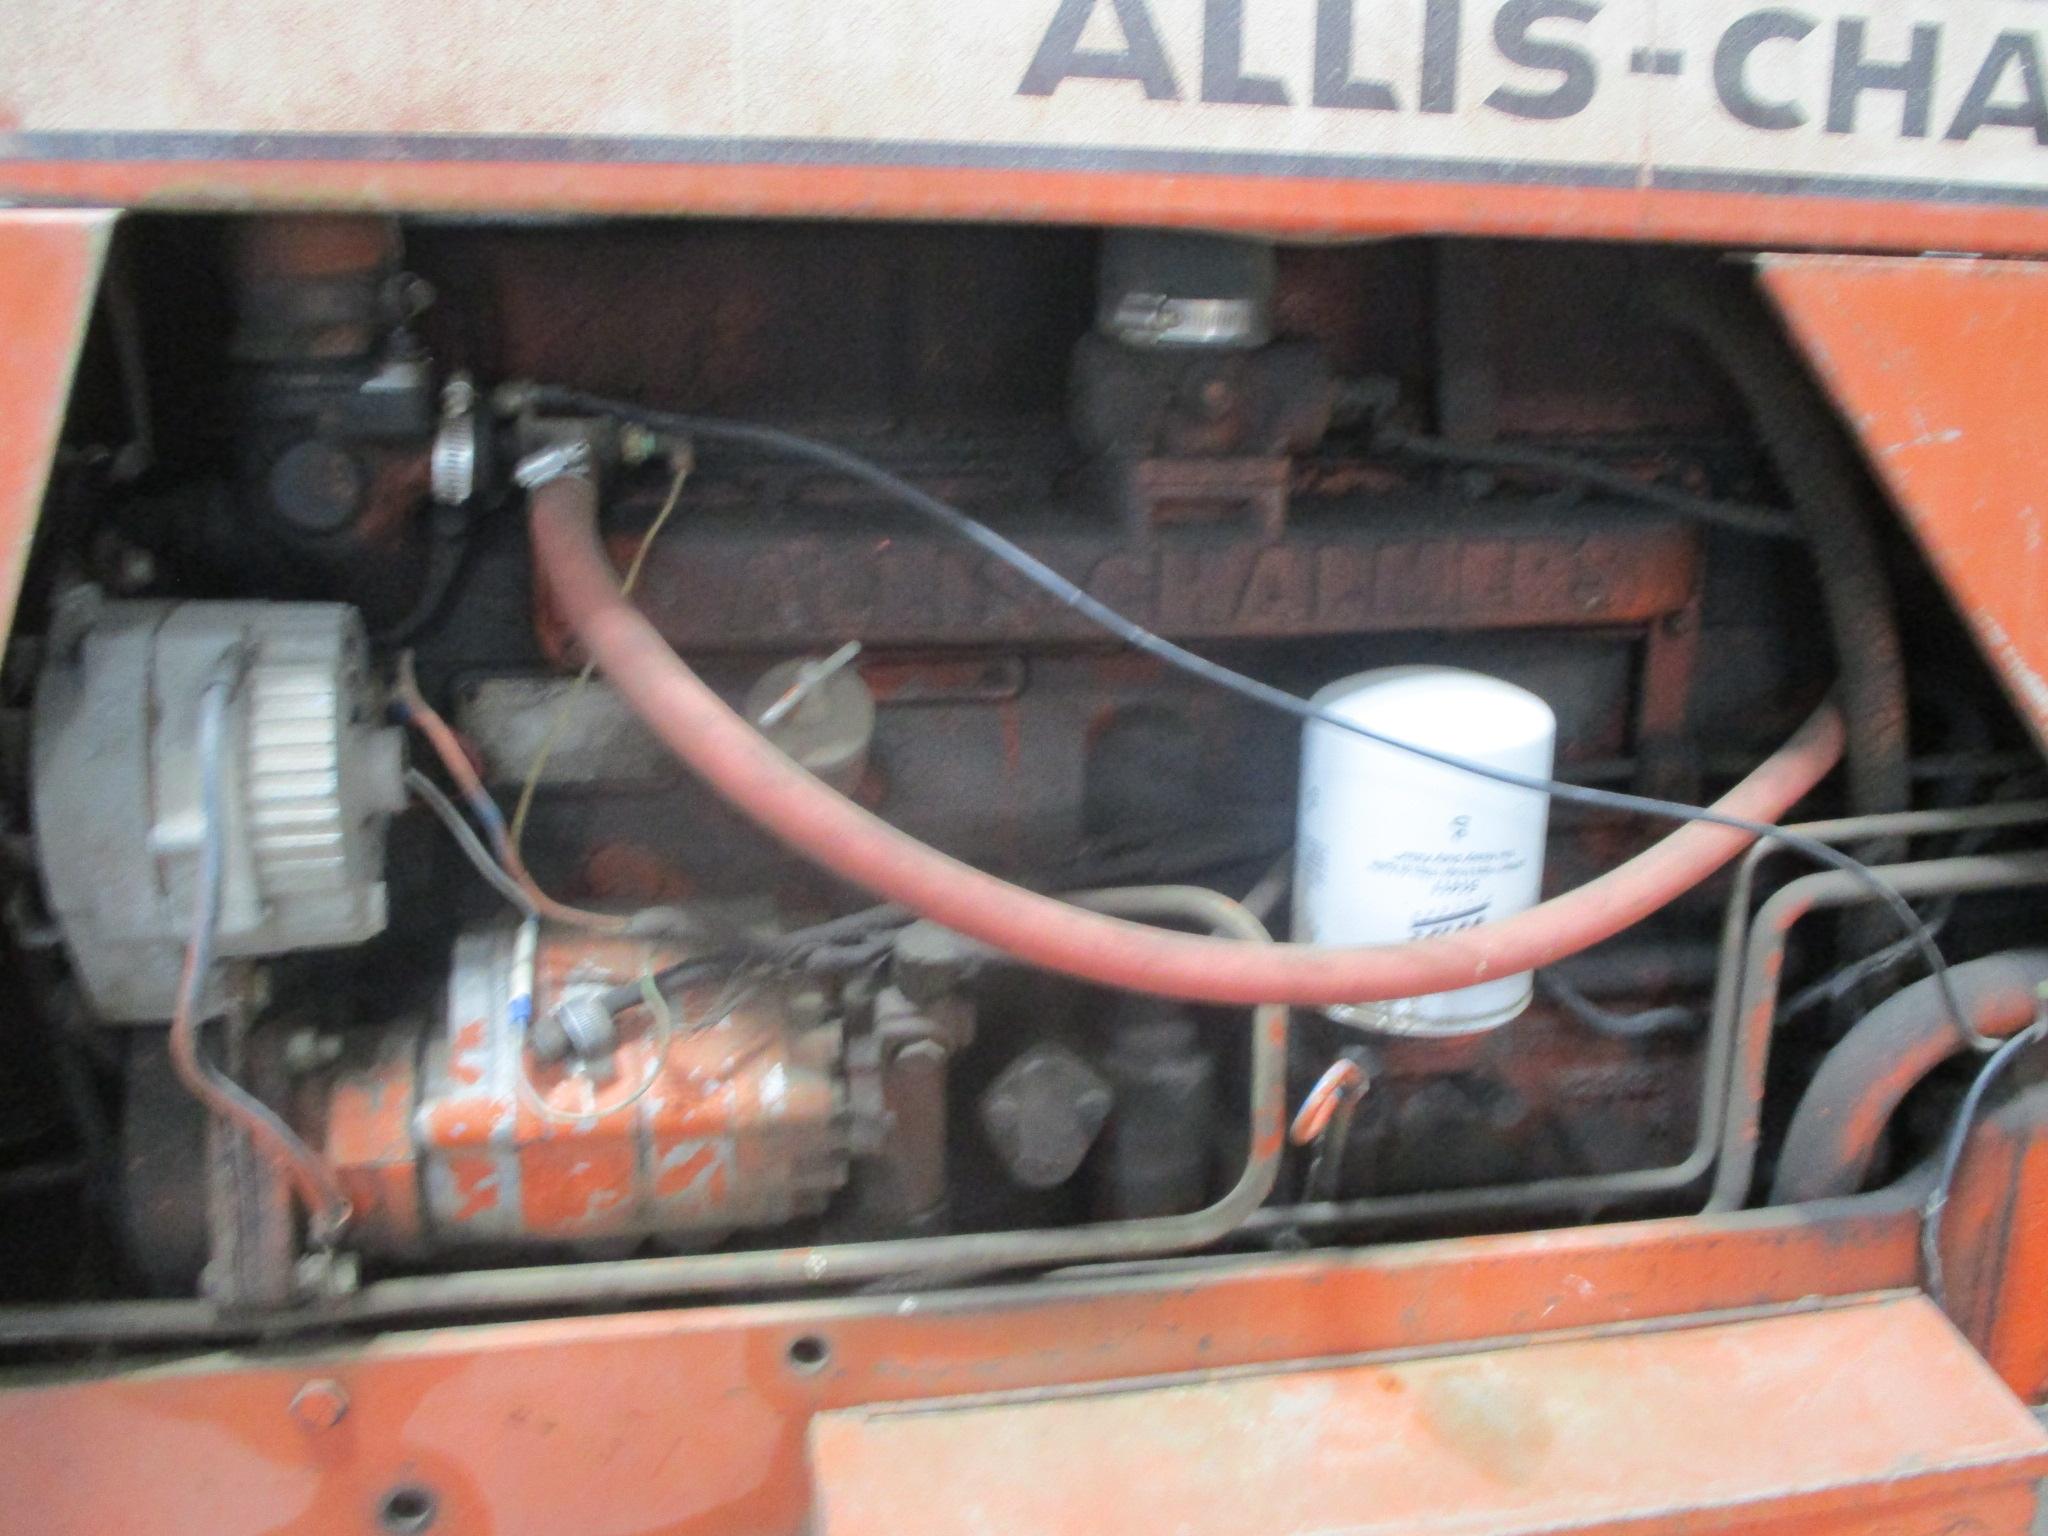 1969 Allis Chalmers XT190 Series III Diesel